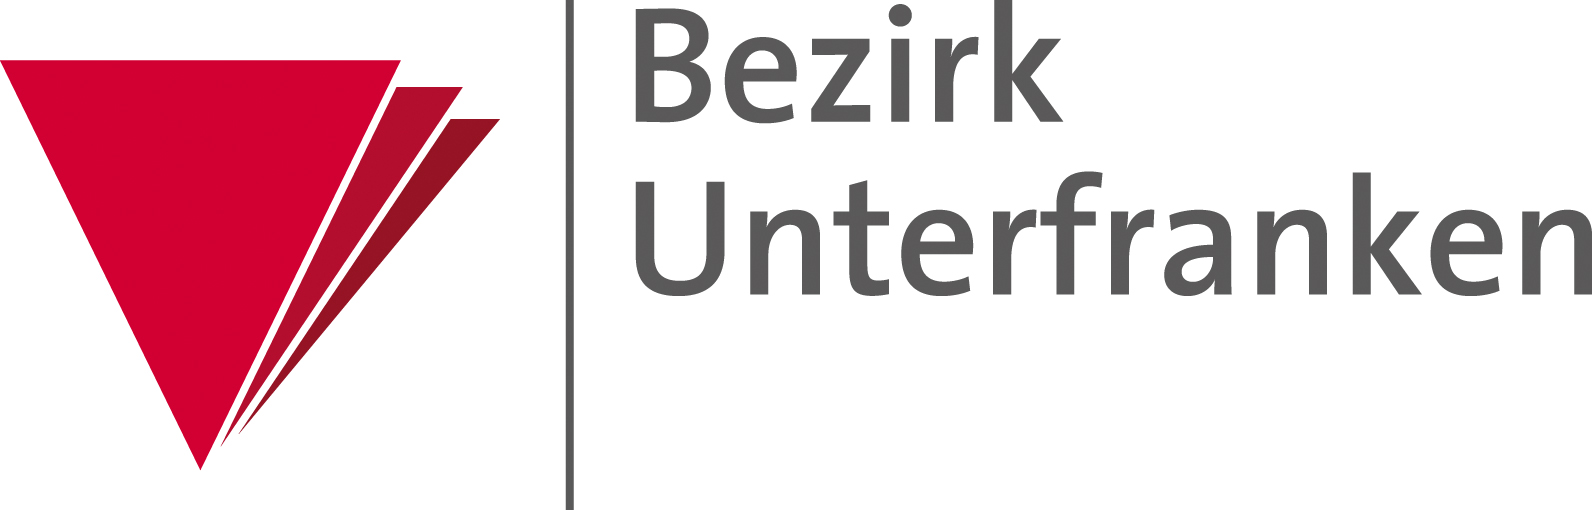 Logo_BezirkUnterfranken.jpg